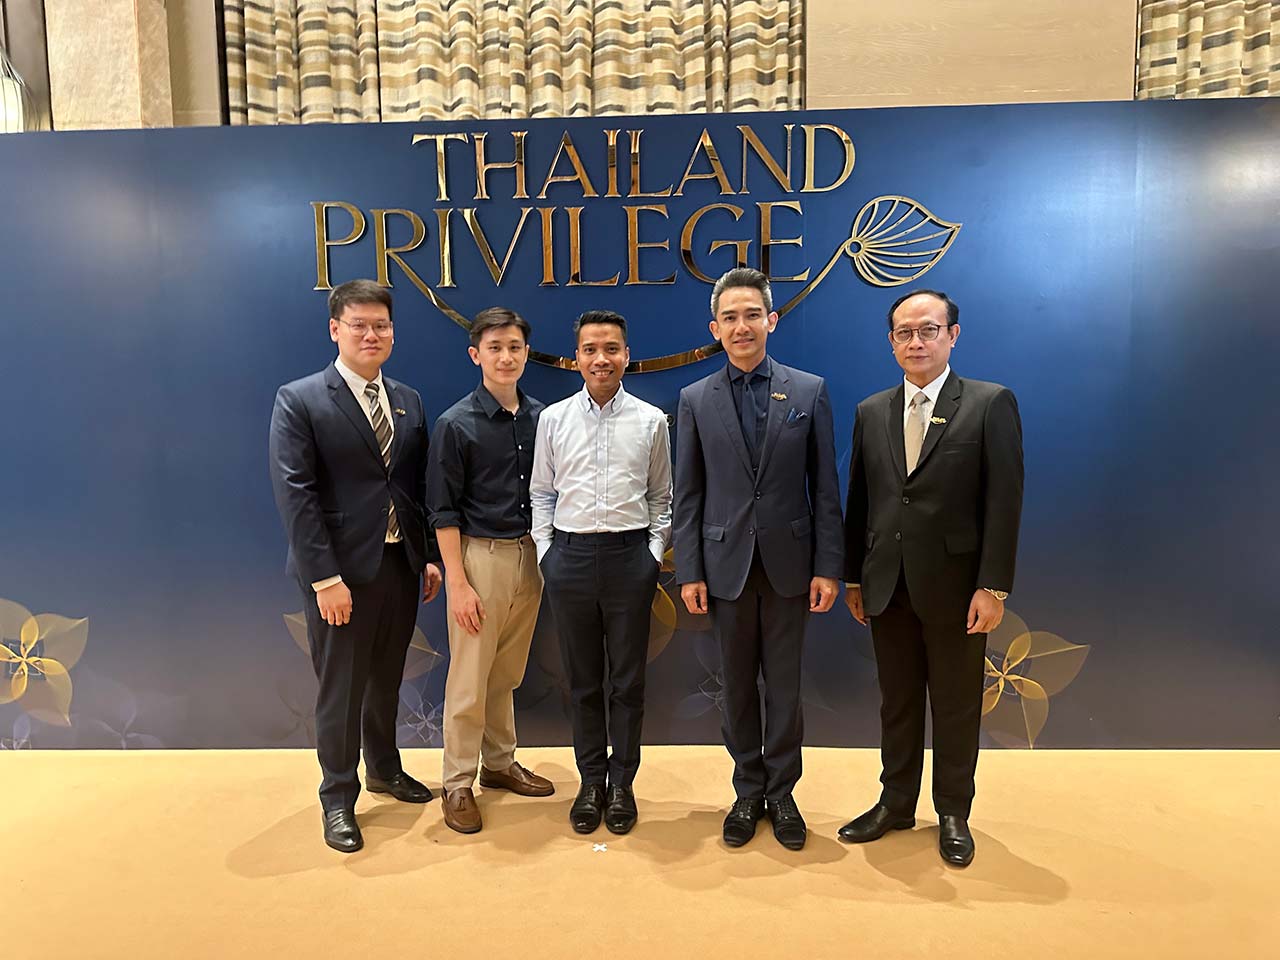 Siam Legal Team with Thailand Privilege